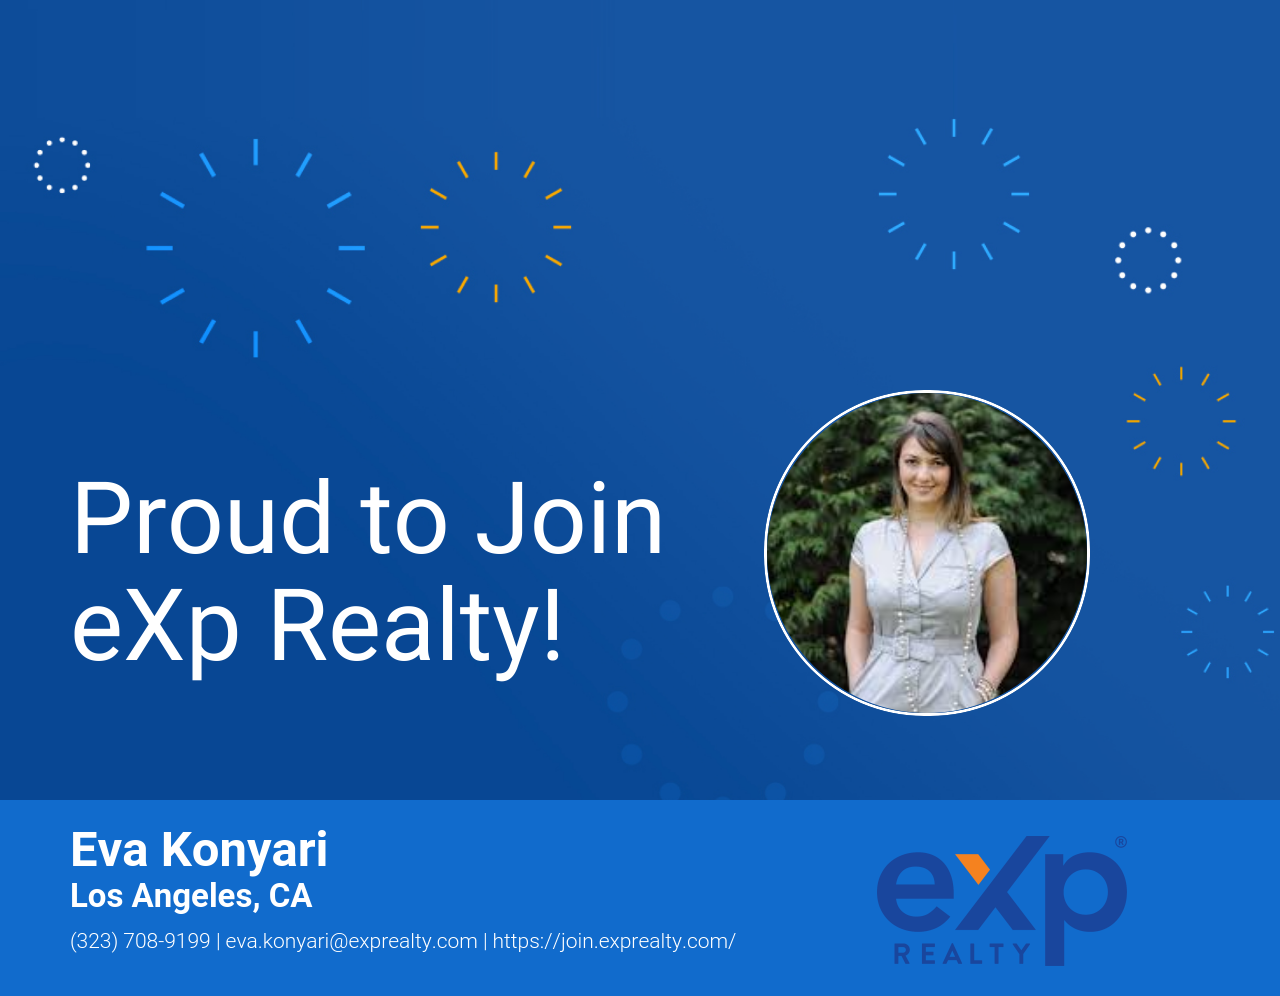 eXp Realty Welcomes Eva Konyari!